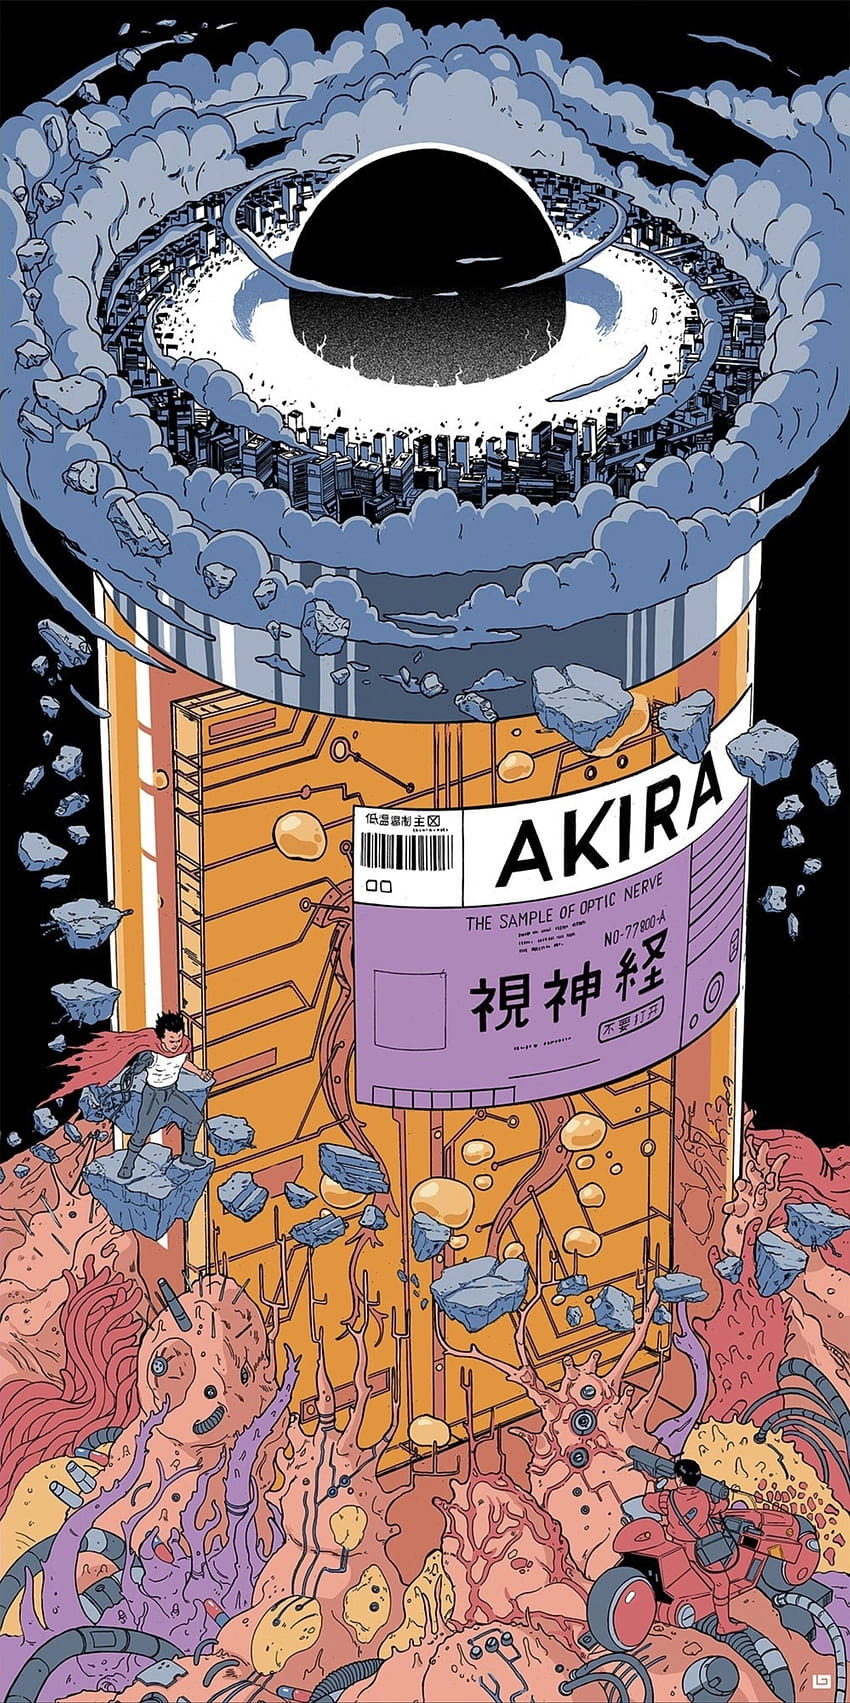 Botol Pil Akira, anime akira wallpaper ponsel HD